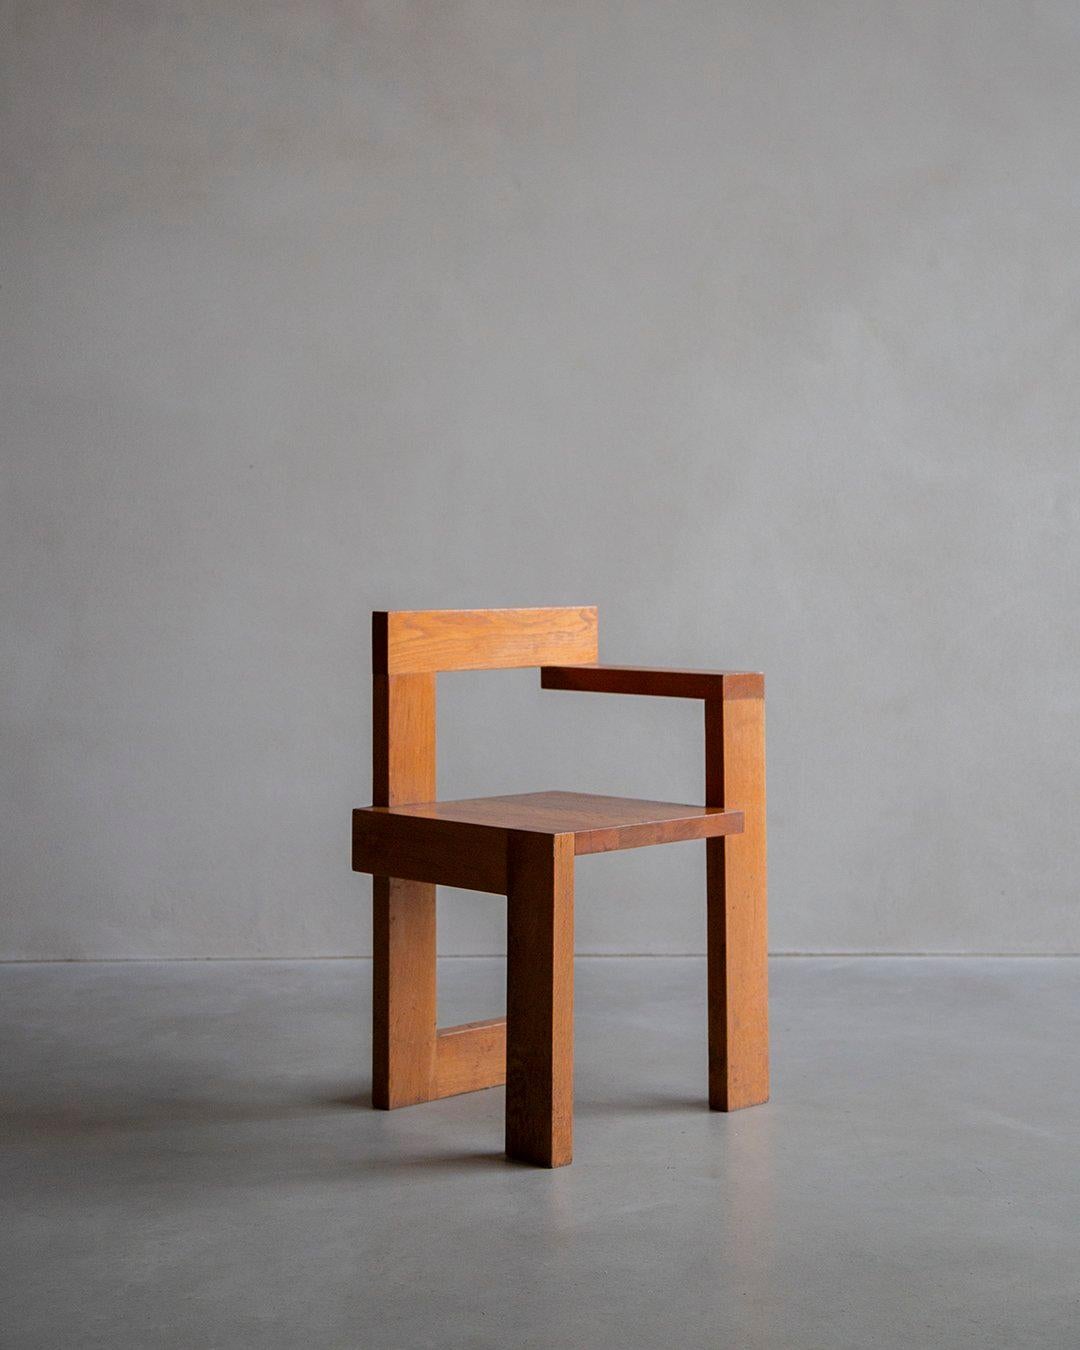 Cette interprétation néerlandaise des années 1970 de la chaise Steltman rend hommage à la vision de Rietveld. Fabriqué en chêne massif, il présente un très beau veinage naturel du bois, signifiant à la fois beauté et solidité. Inscrite dans